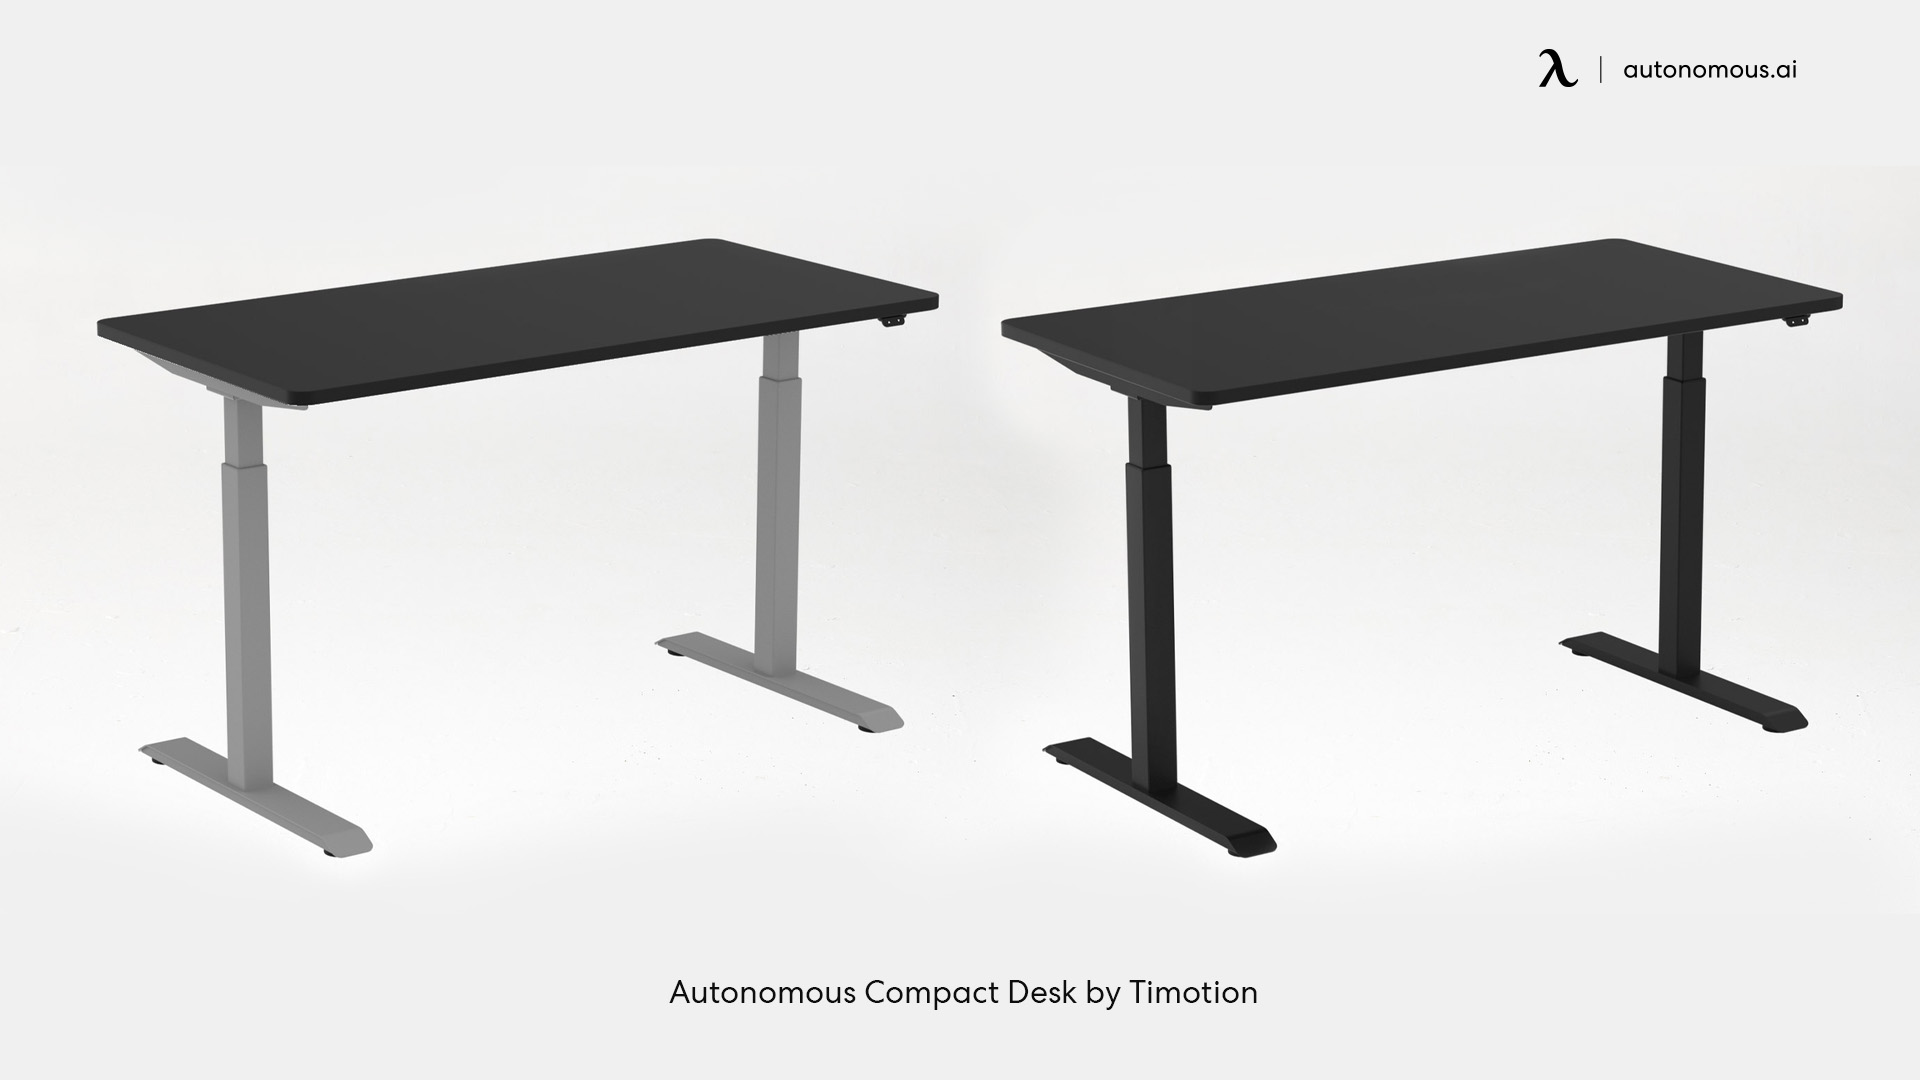 Autonomous Compact Desk by Timotion